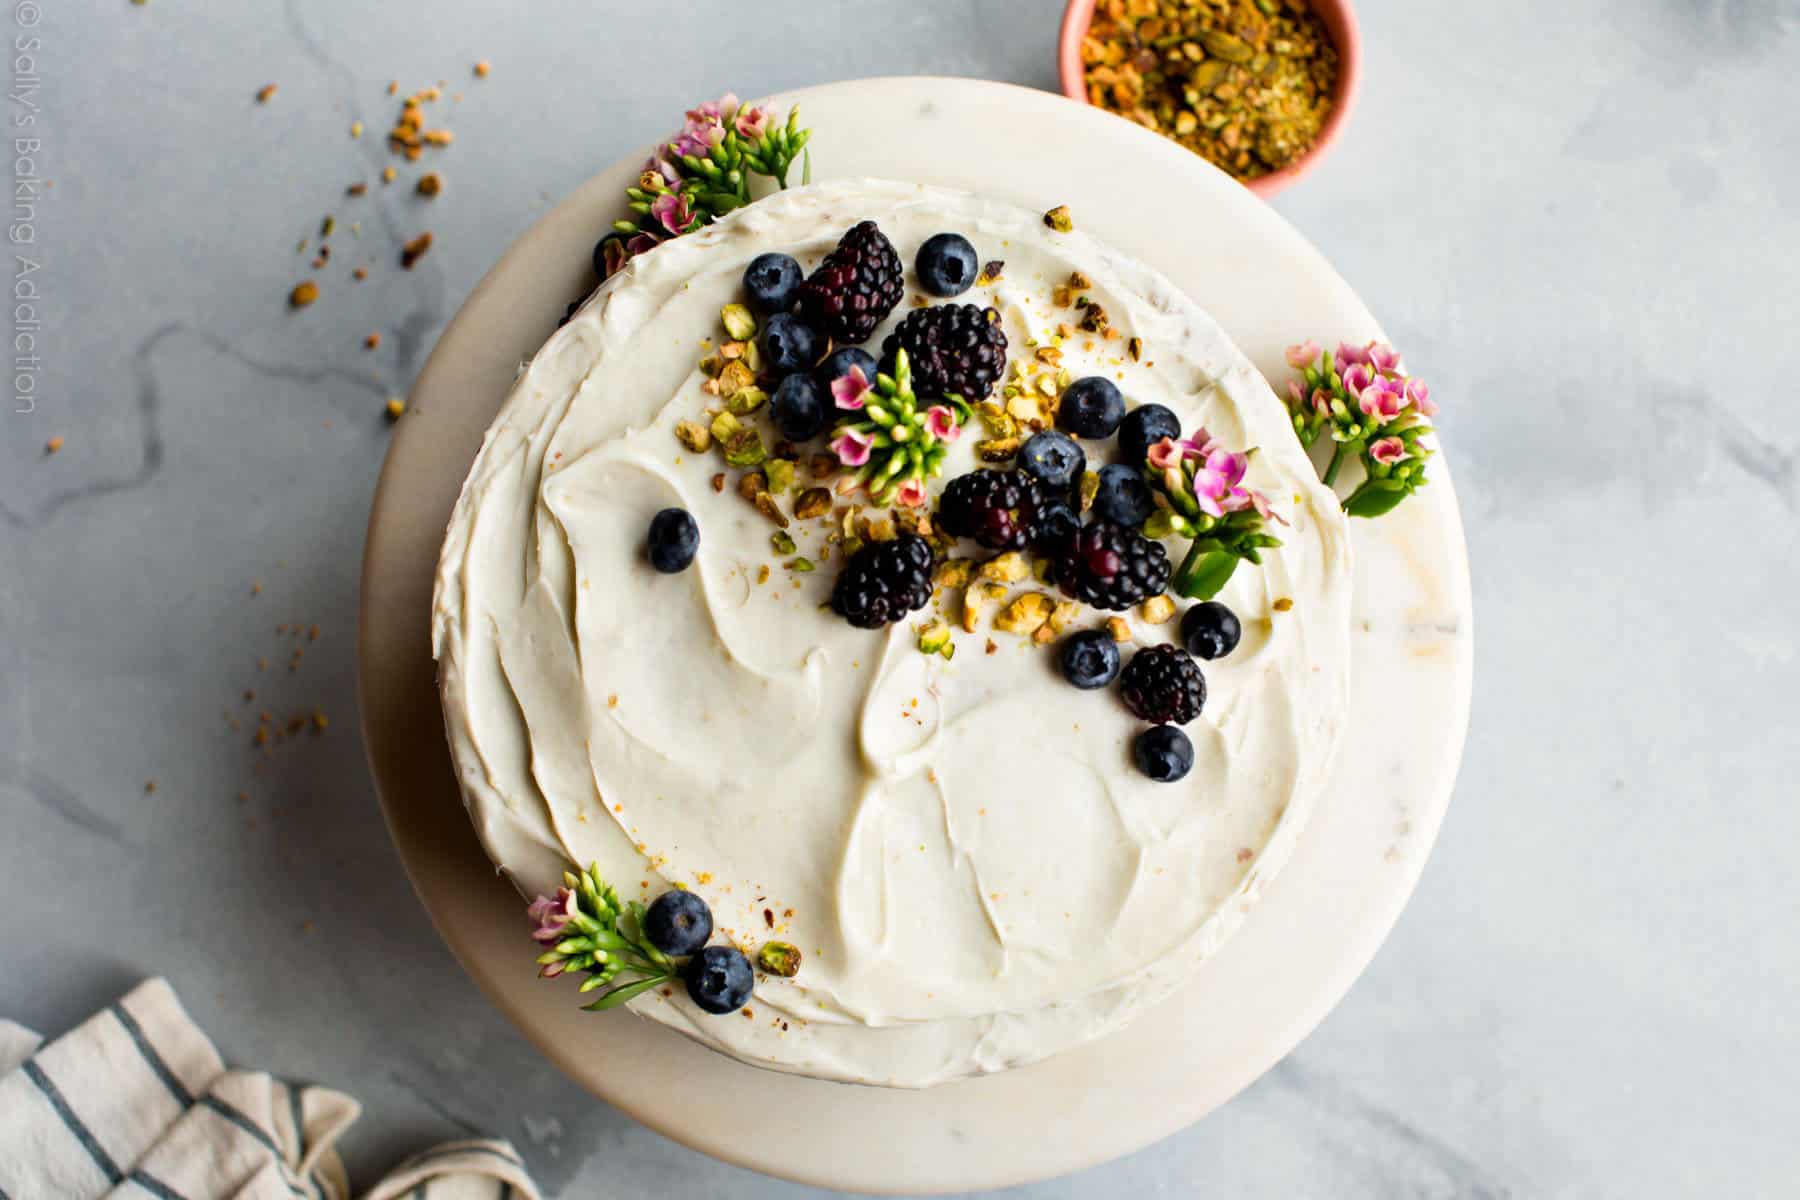 https://www.goodtaste.tv/wp-content/uploads/2018/08/homemade-pistachio-cake-e1534186066335.jpg